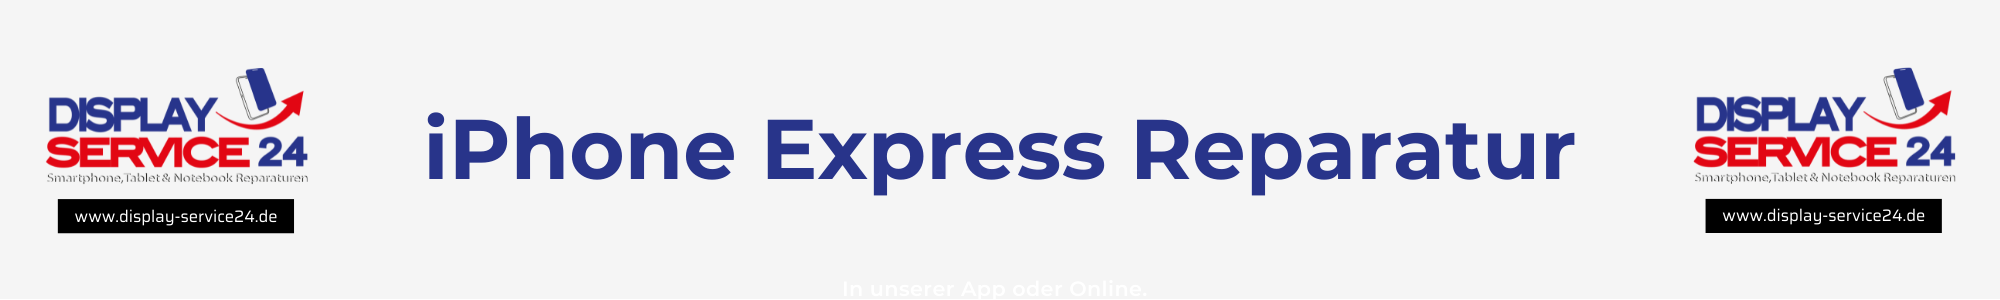 iPhone Express Reparatur